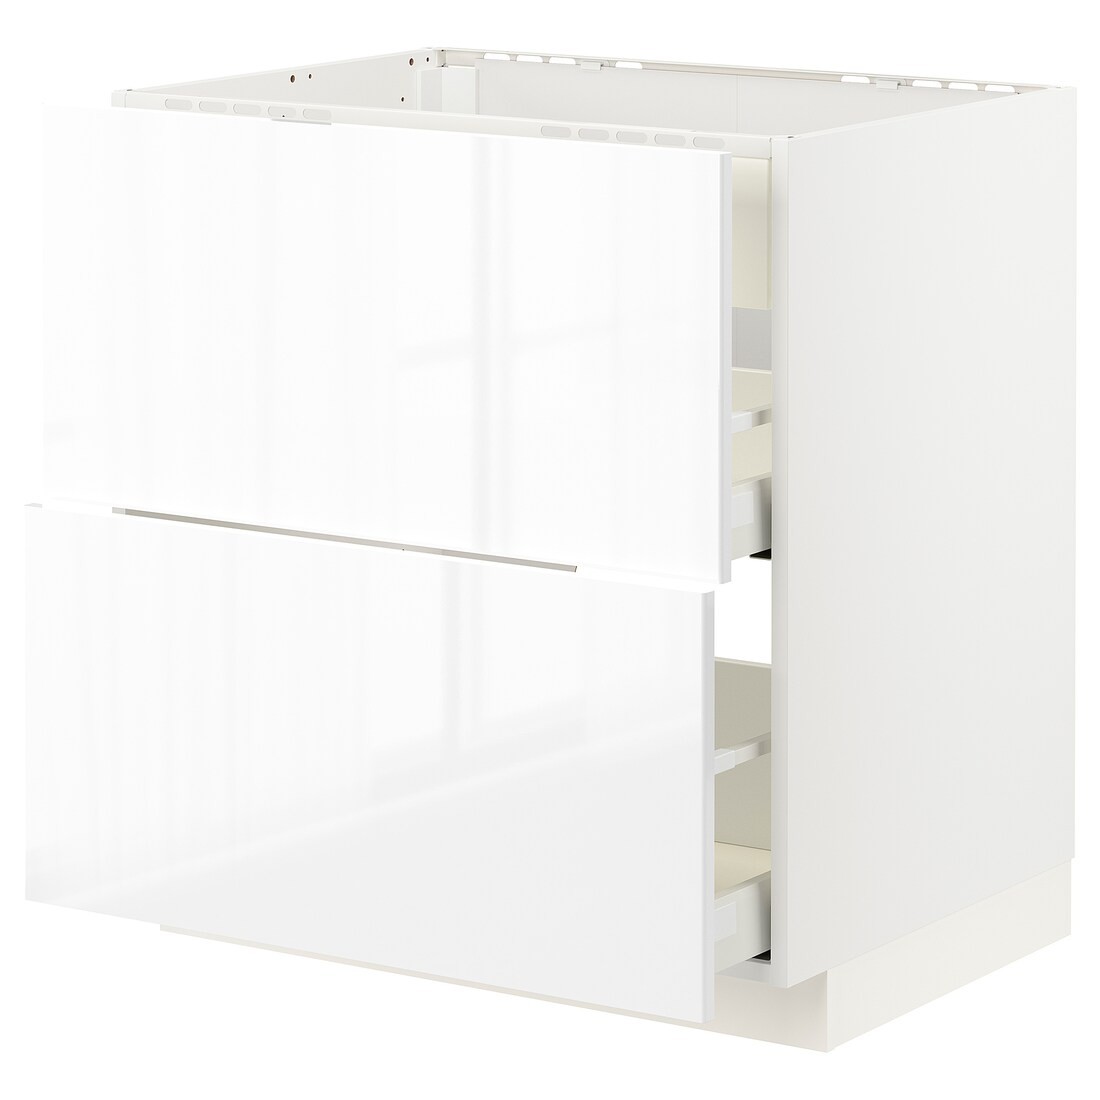 IKEA METOD МЕТОД / MAXIMERA МАКСІМЕРА Підлогова шафа для варочні панелі / витяжка з шухлядою, білий / Ringhult білий, 80x60 см 29335658 293.356.58